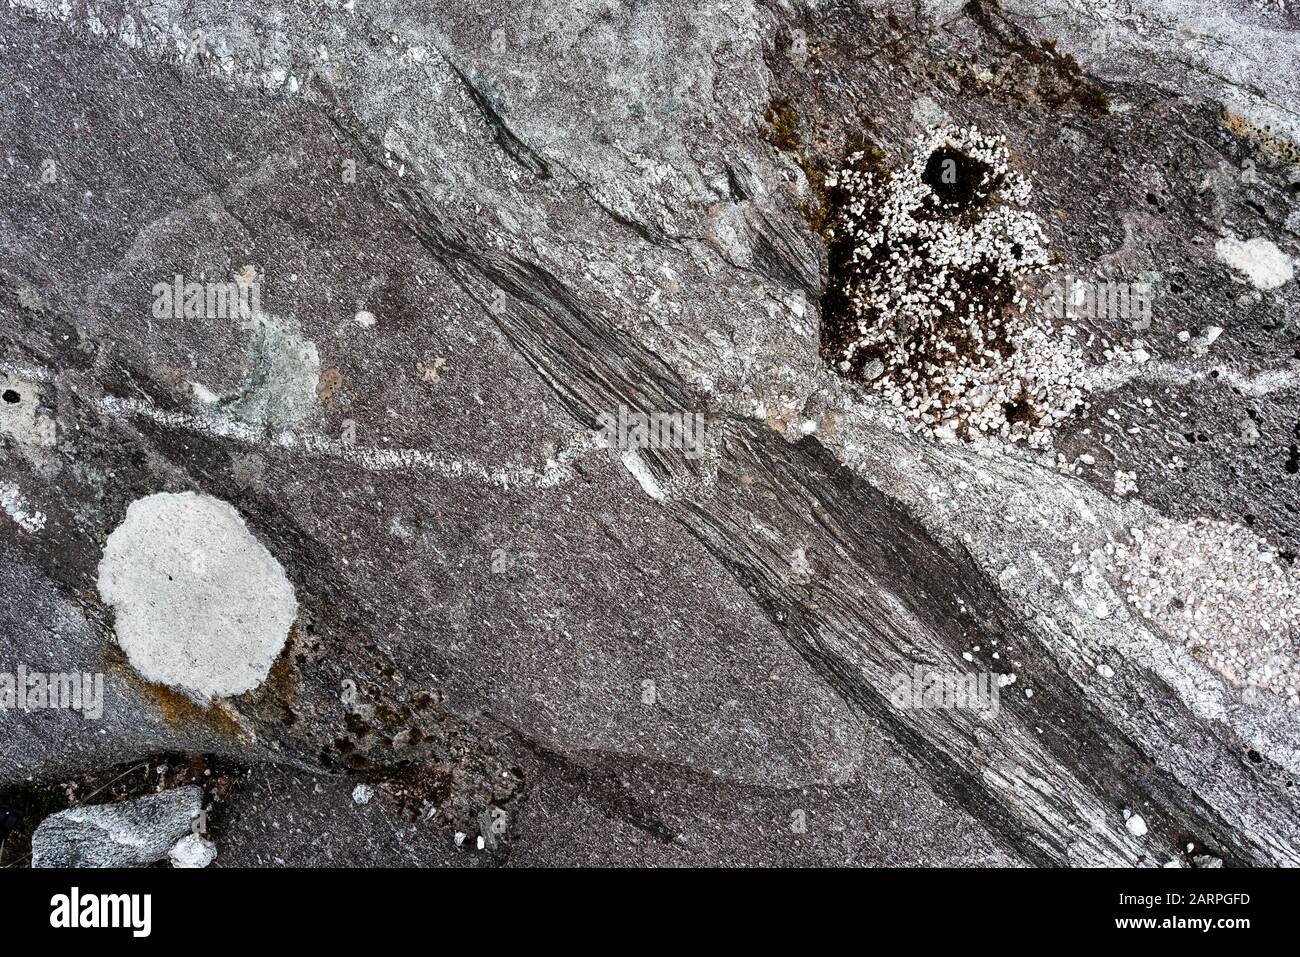 Dettaglio della Granite Dongegal principale nella Poison Glen, County Donegal, Irlanda, che mostra complesse relazioni di intrusione ignee e texture di deformazione Foto Stock